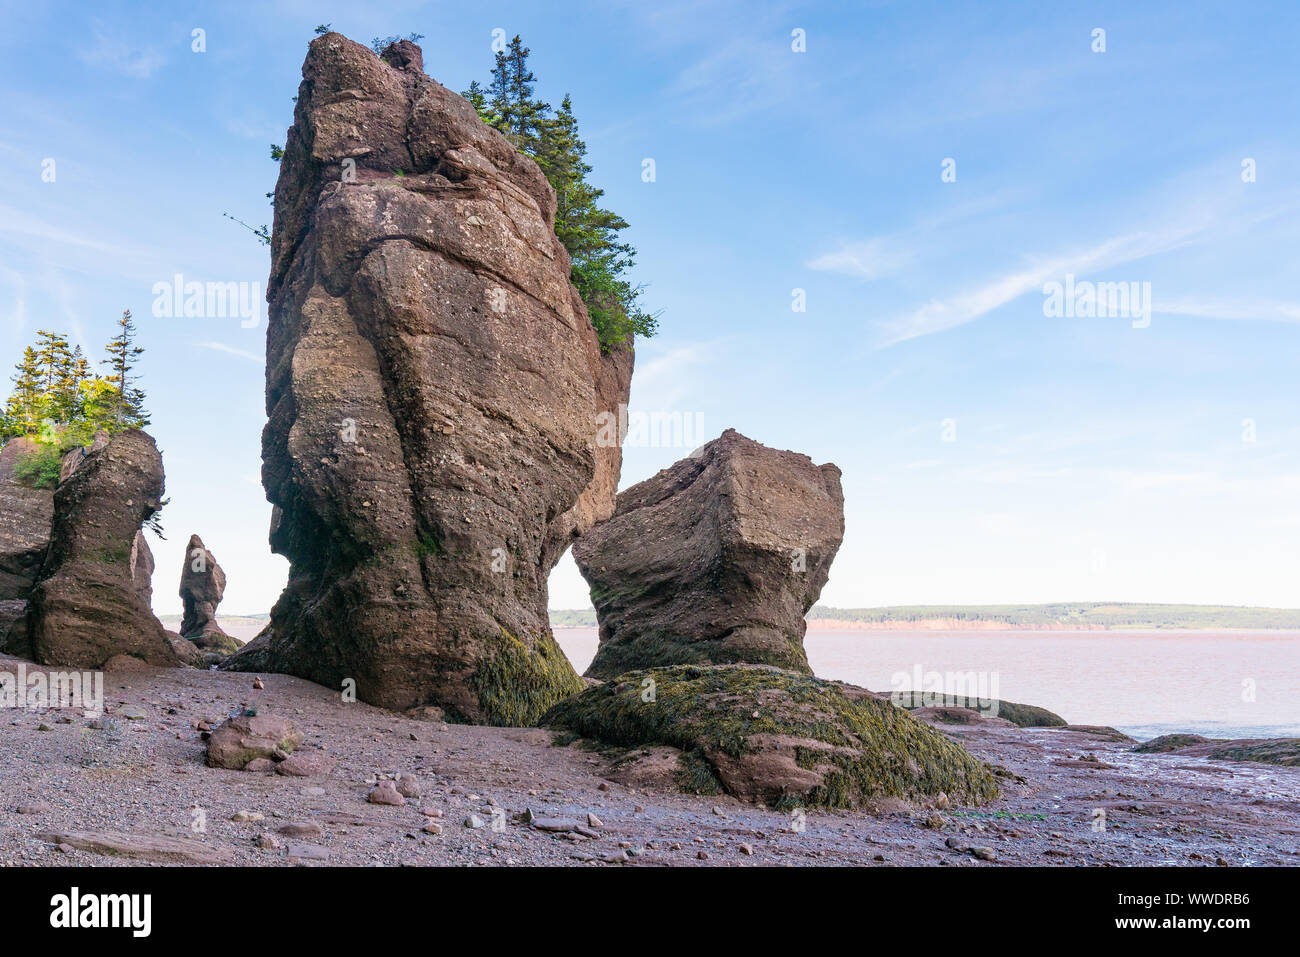 Formations Pot de fleurs le long de la baie de Fundy au parc des rochers Hopewell Rocks, au Nouveau-Brunswick, Canada Banque D'Images